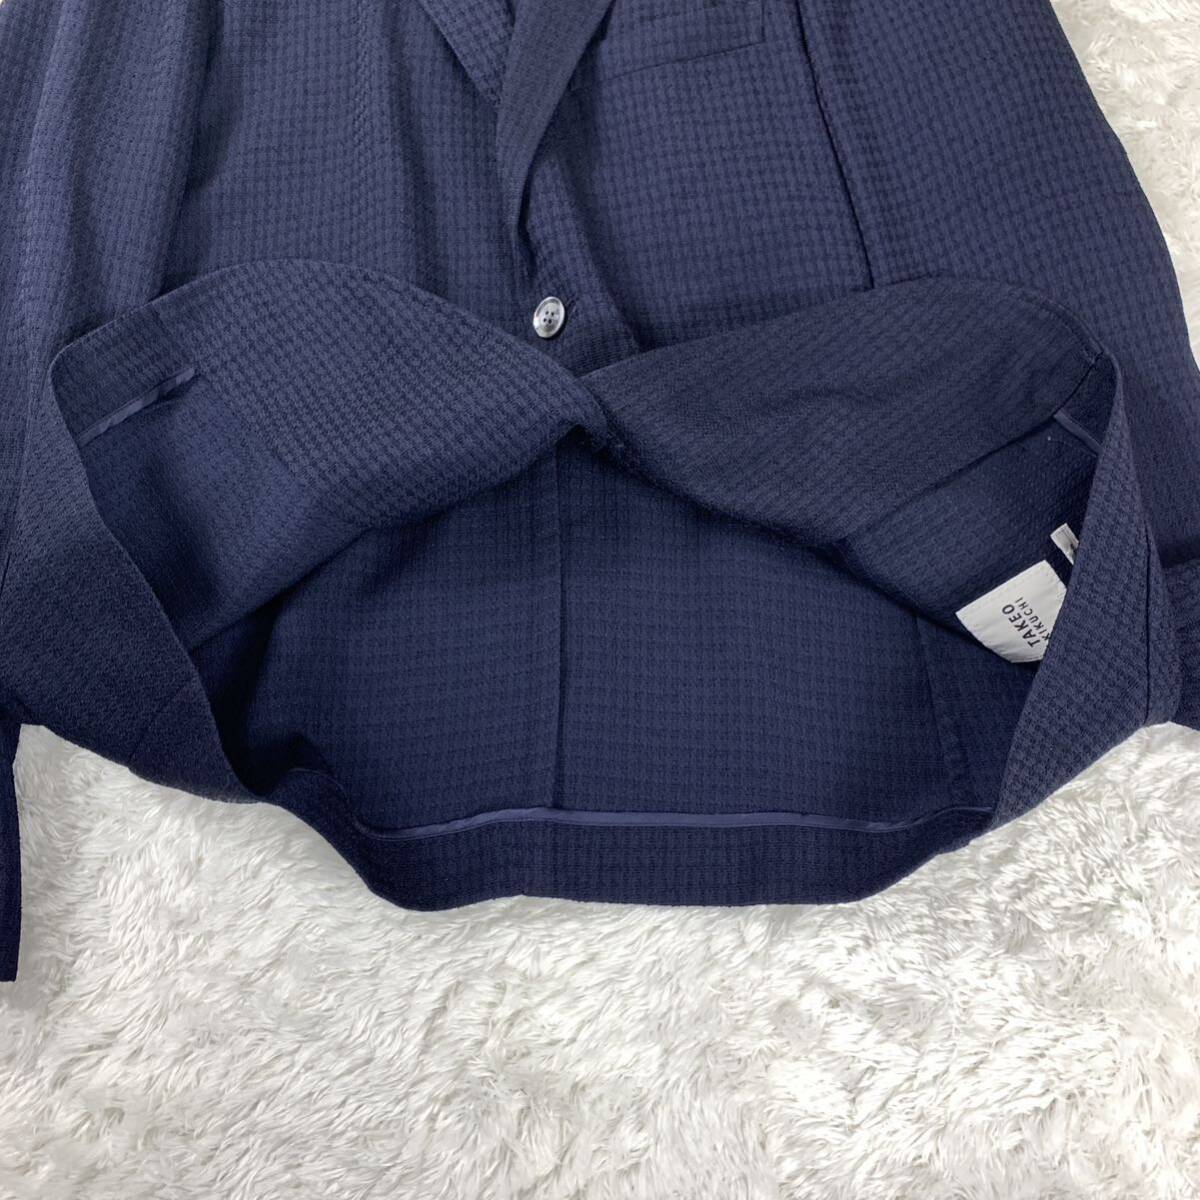  Takeo Kikuchi tailored jacket шелк темно-синий 2 YA6704